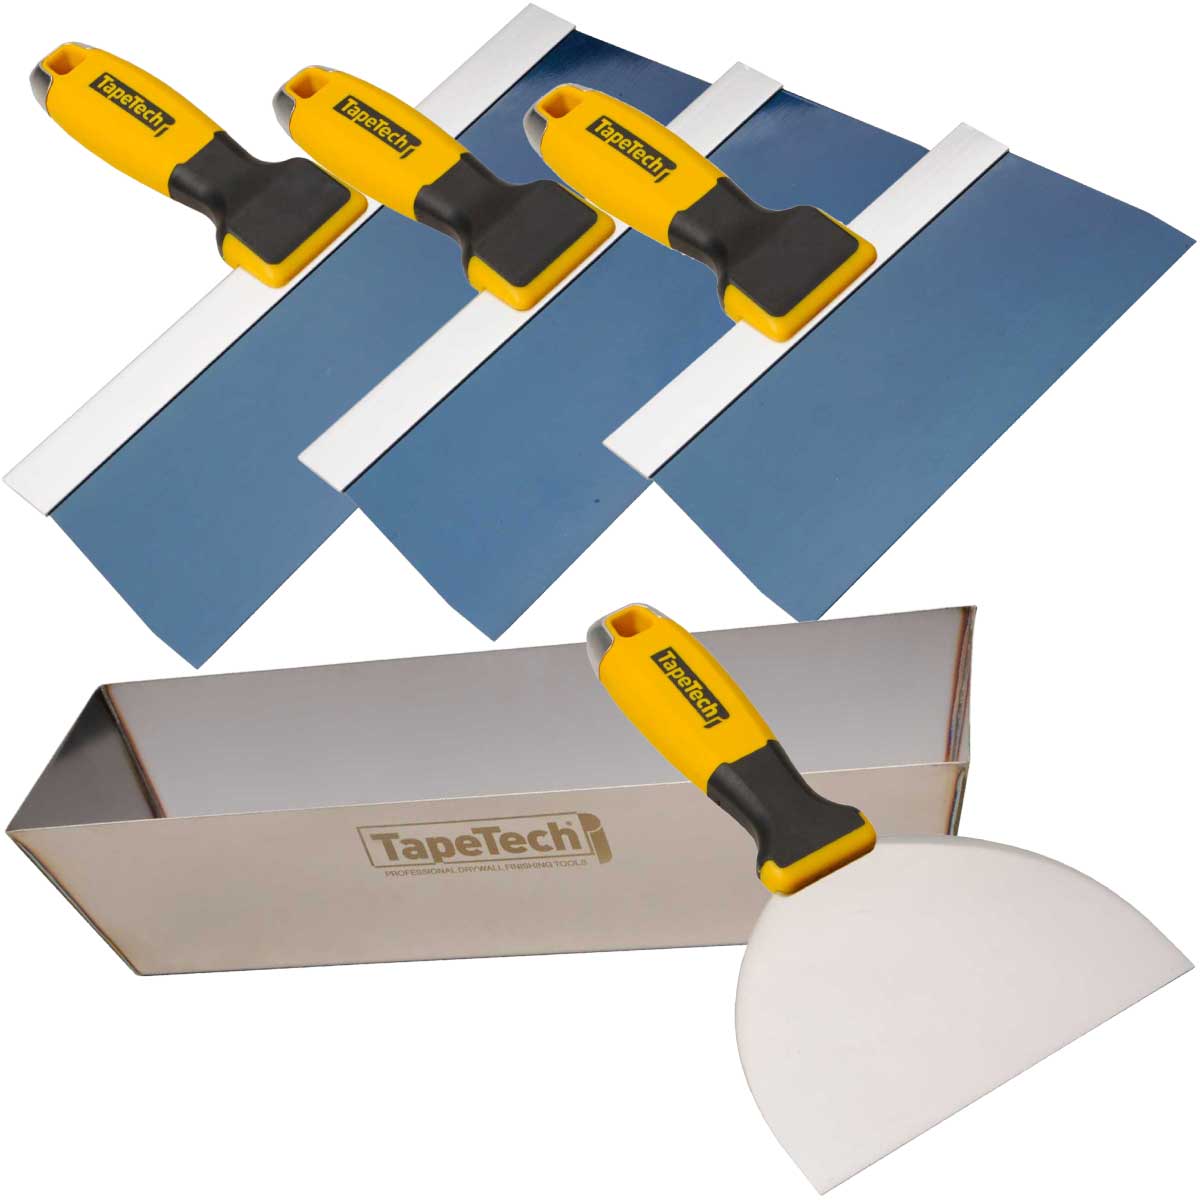 TapeTech Taping Knife and Pan Kit